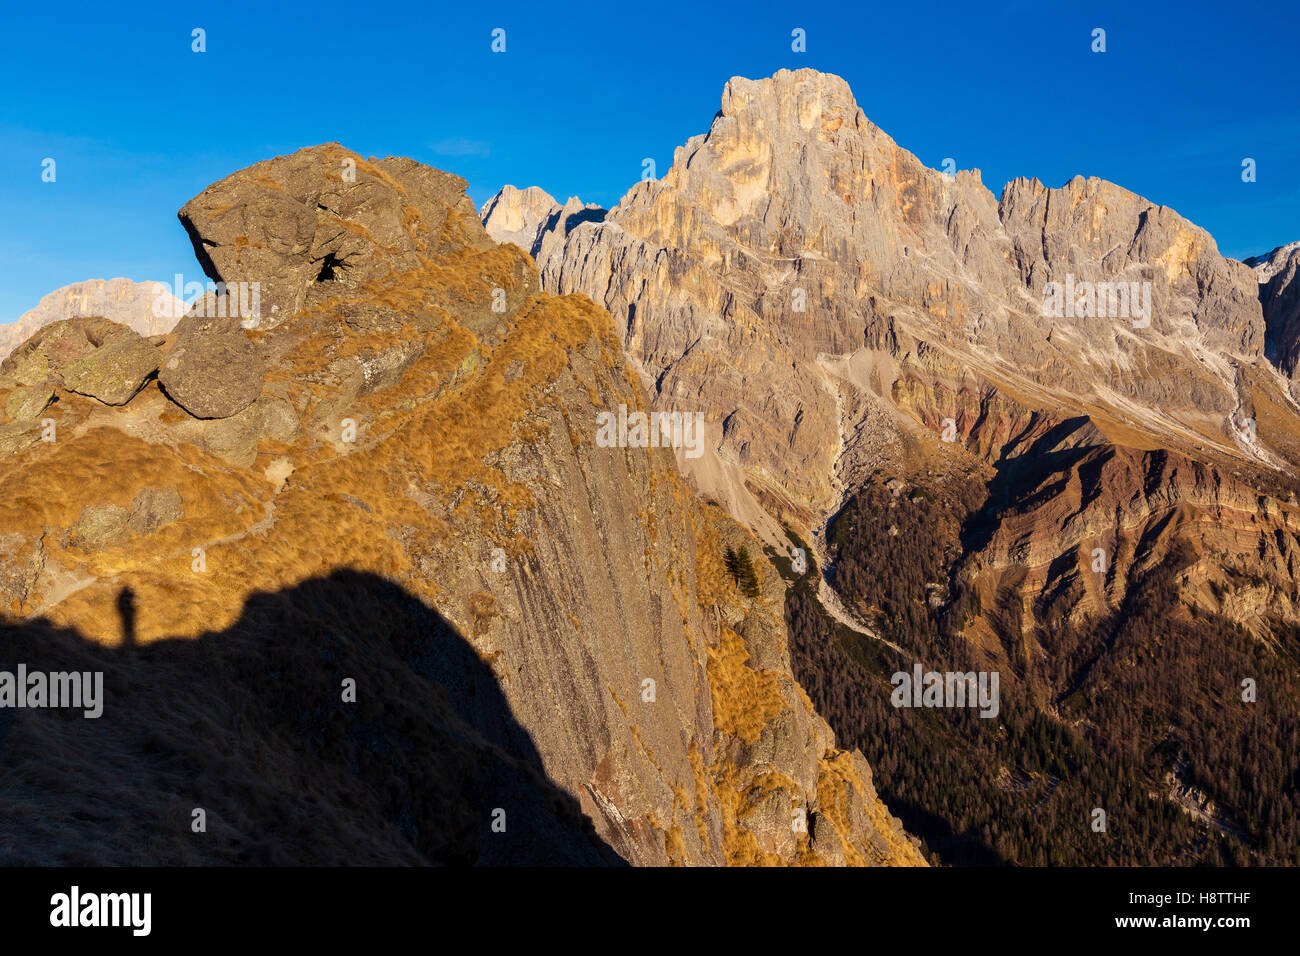 Piccola Cavallazza (Lagorai massif) and Cimon della Pala peak of the Pale di San Martino group. Dolomites of Trentino. Italian Alps. Europe. Stock Photo